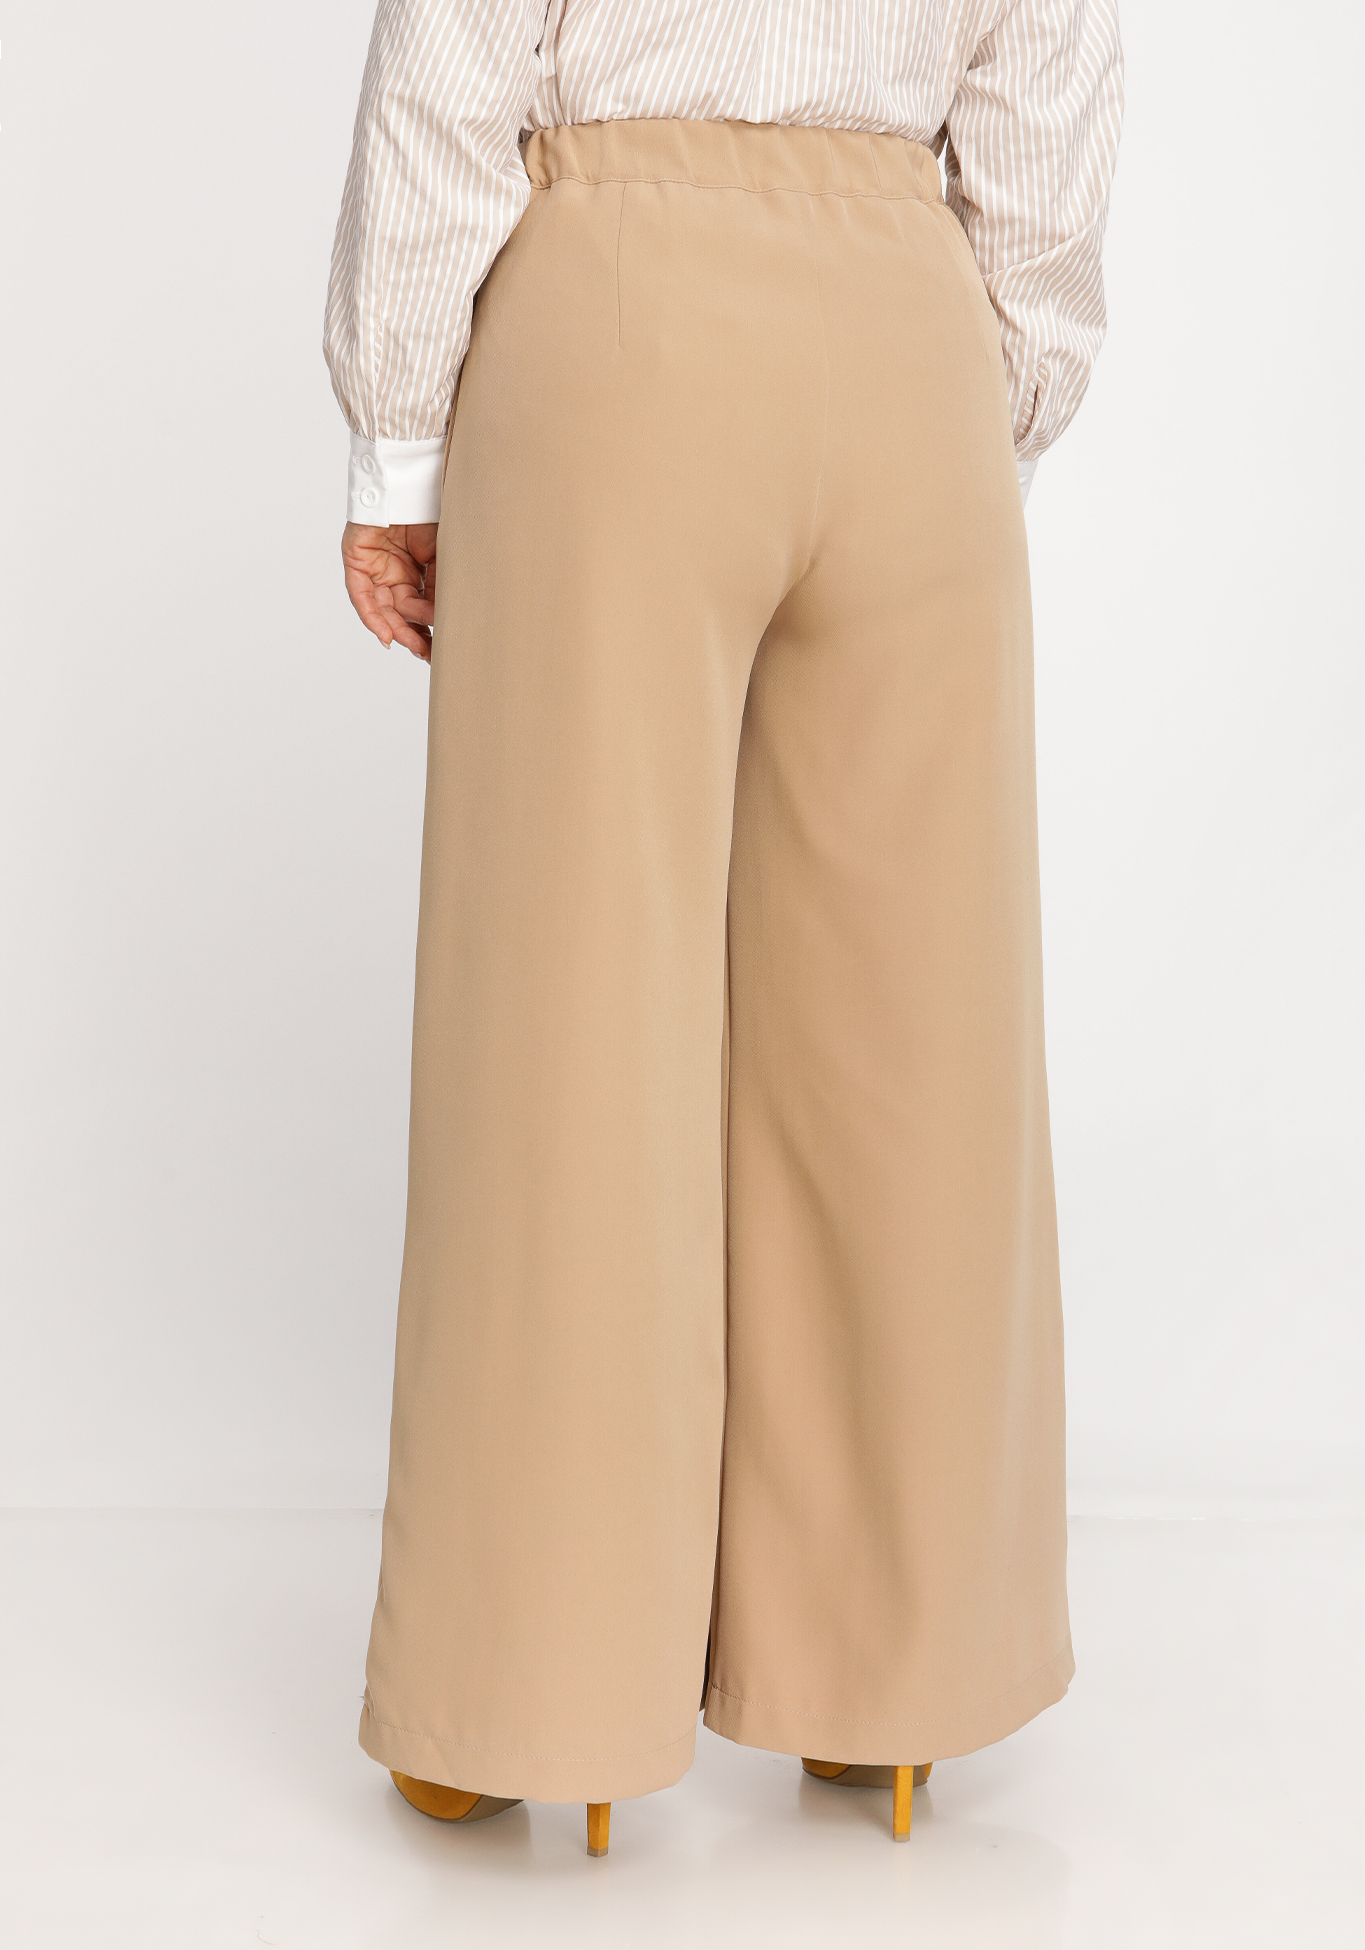 Юбка-брюки со складками SVETLANA VORONTSOVA, размер 54, цвет бежевый - фото 5